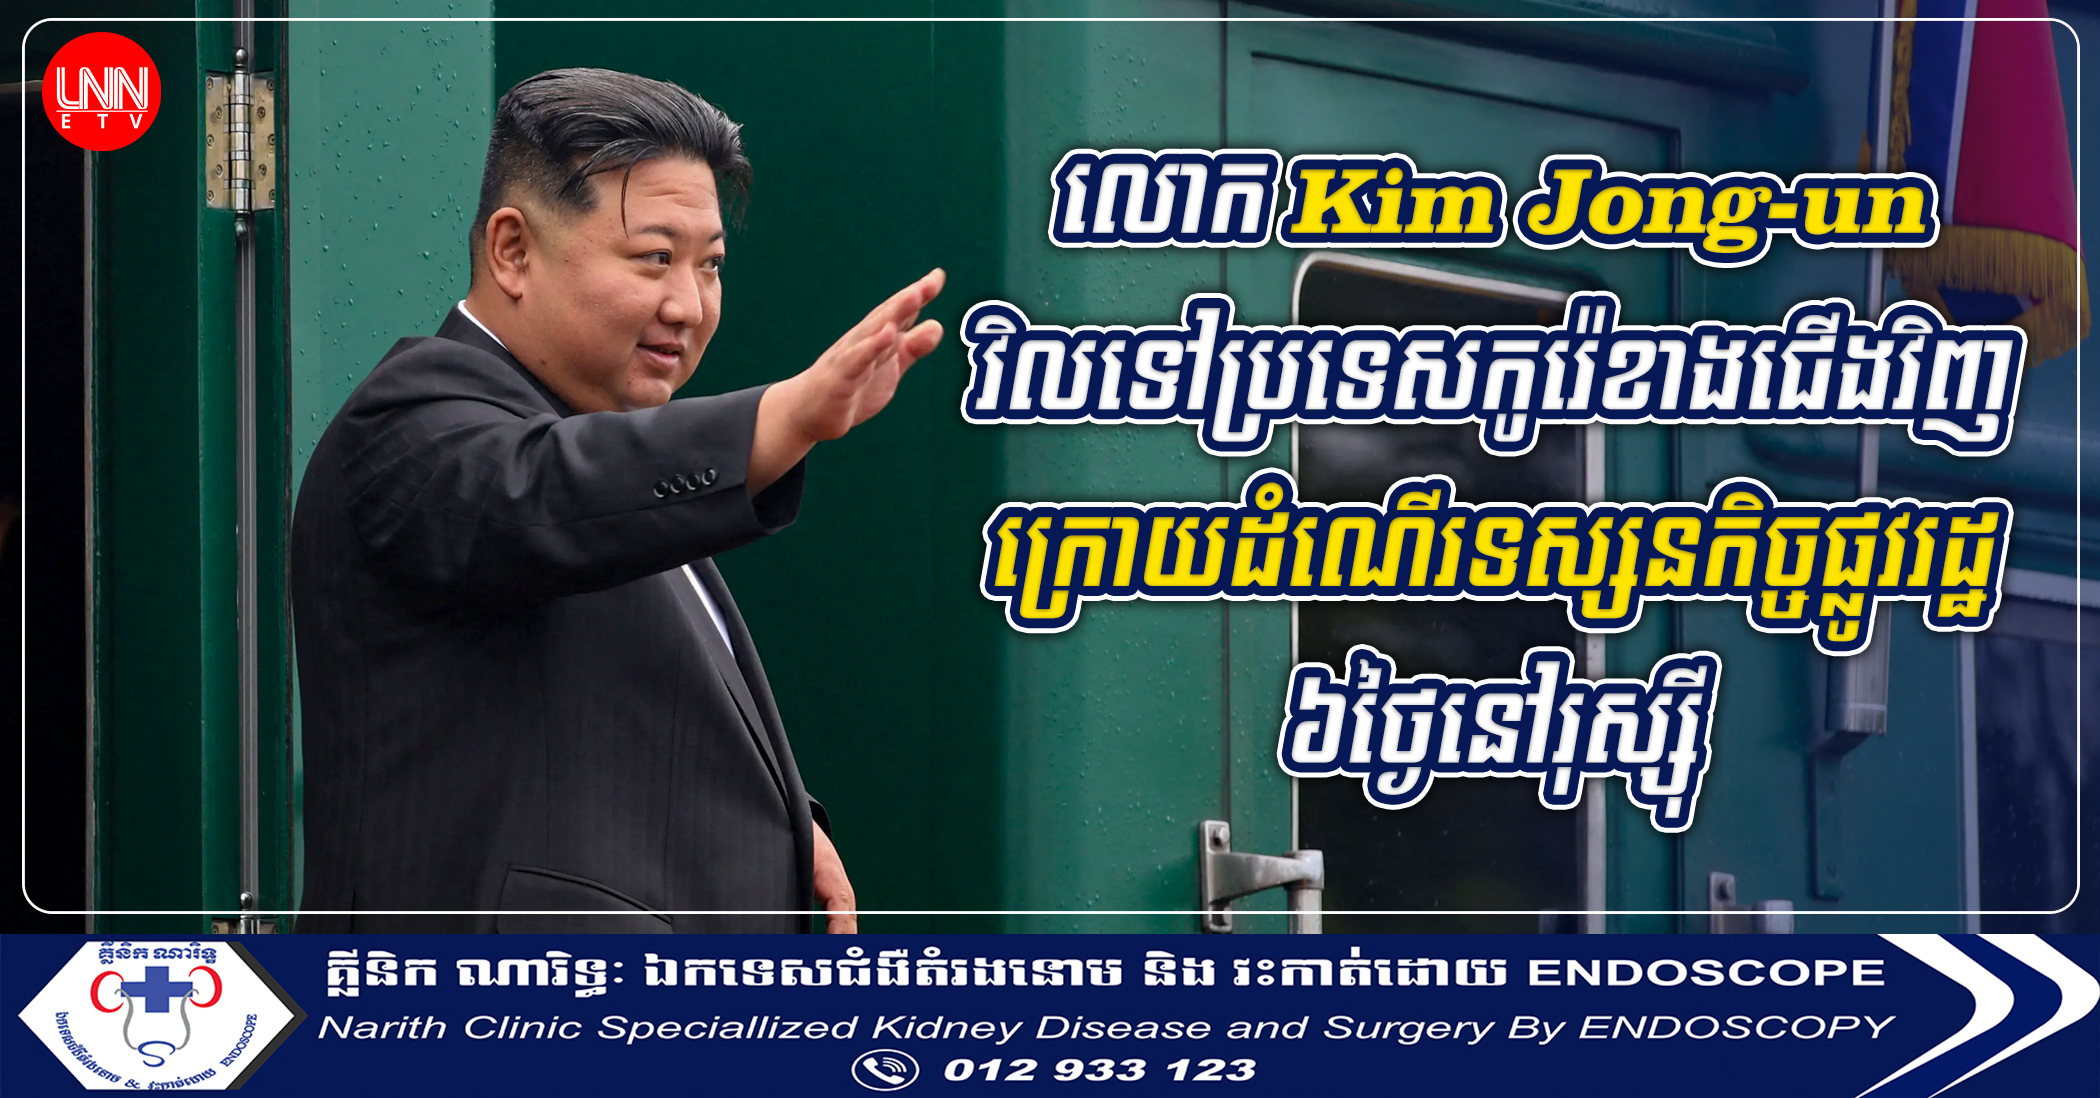 លោក Kim Jong-un វិលទៅប្រទេសកូរ៉េខាងជើងវិញក្រោយដំណើរទស្សនកិច្ចផ្លូវរដ្ឋ ៦ថ្ងៃនៅរុស្ស៊ី